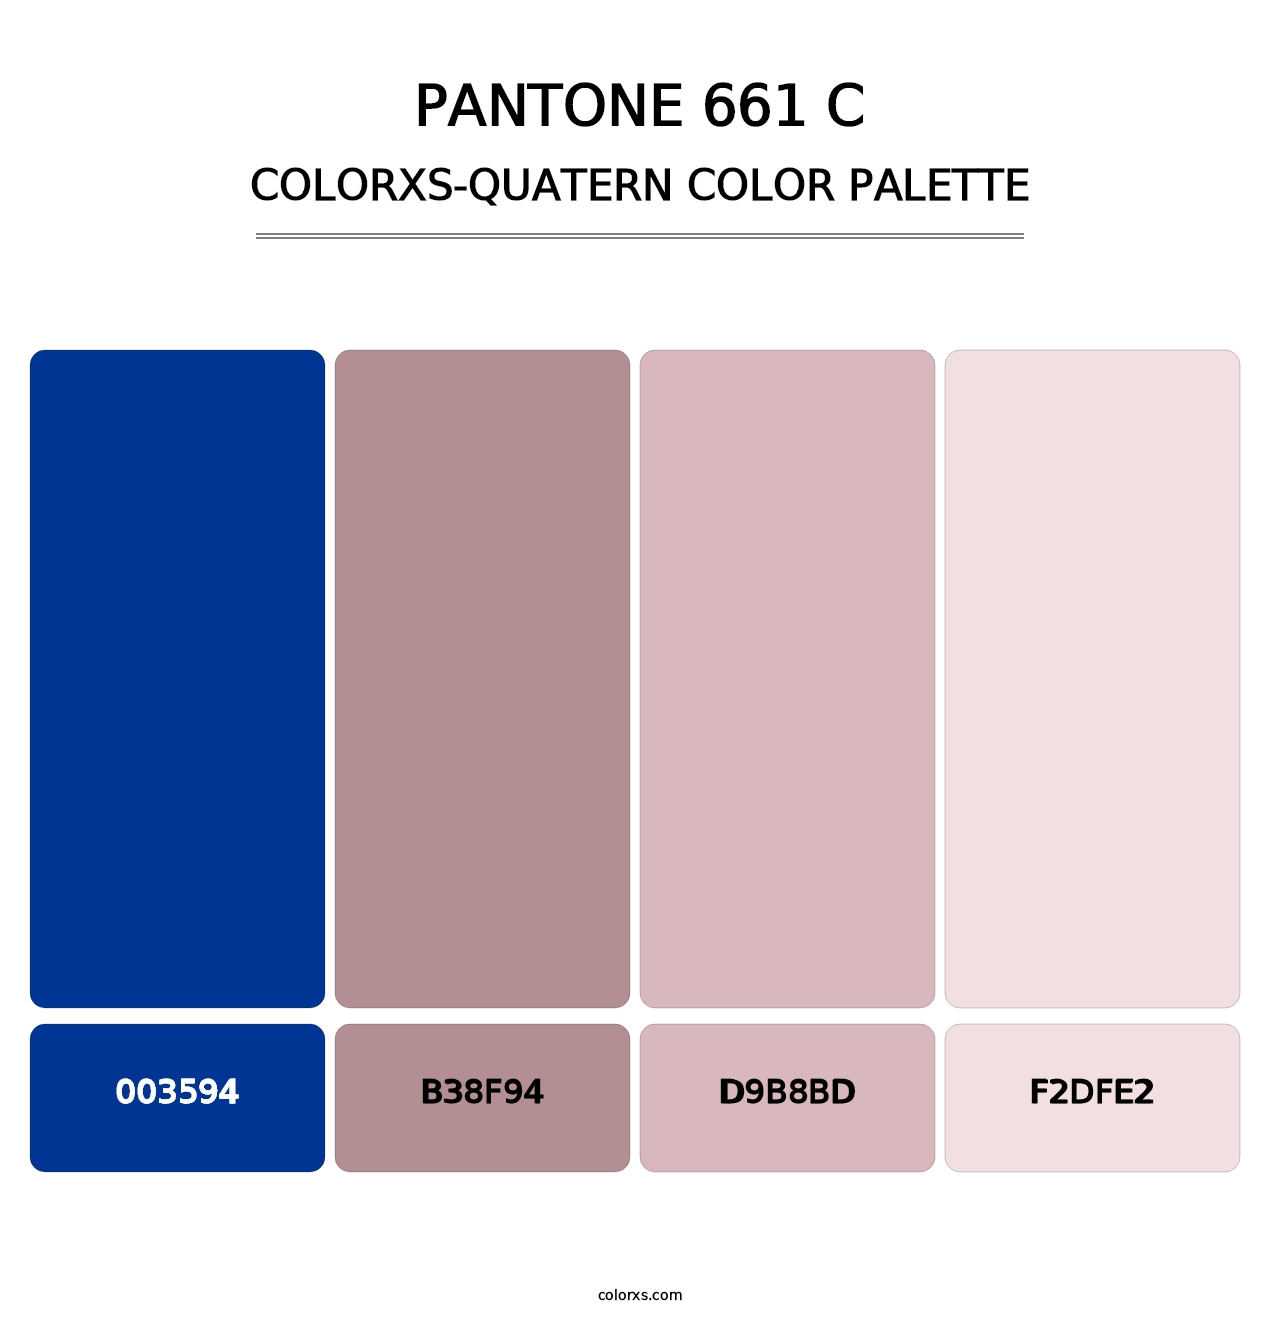 PANTONE 661 C - Colorxs Quatern Palette